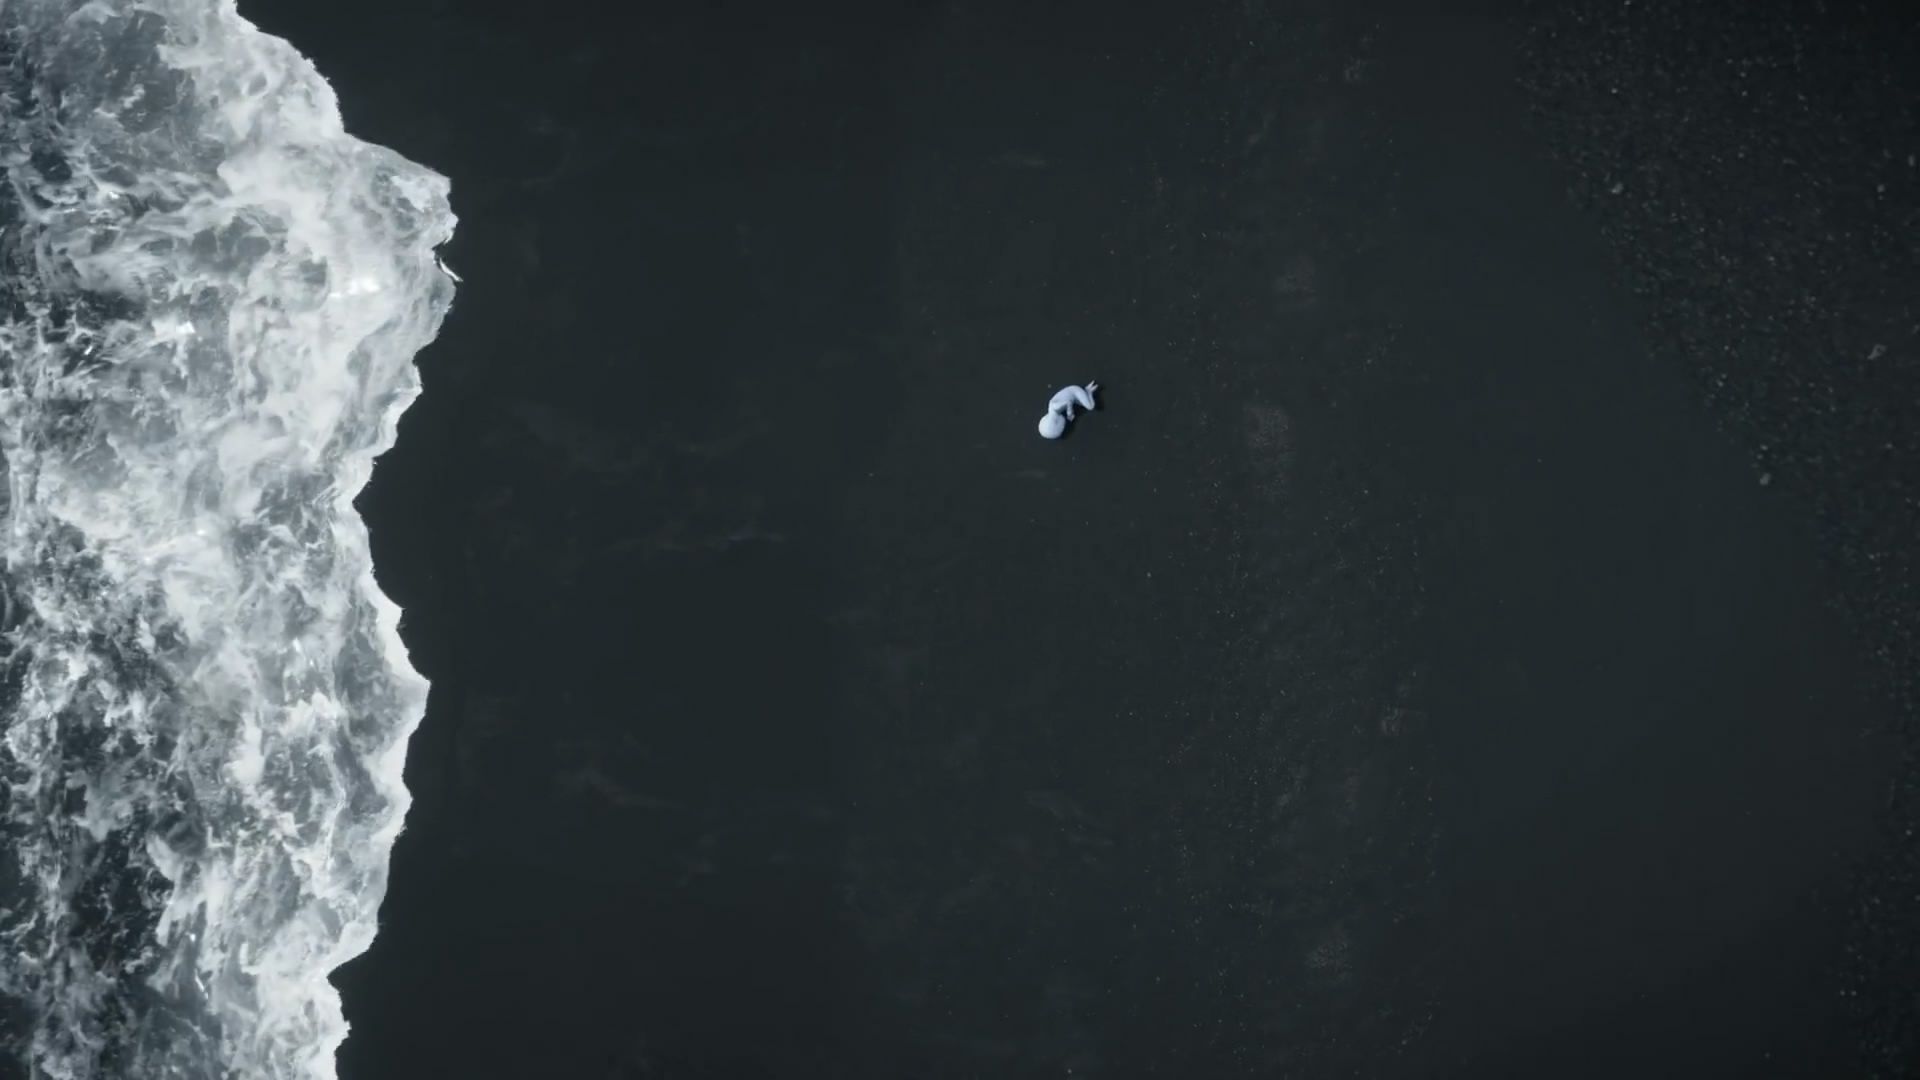 《死亡搁浅》“冥滩”宣传片欣赏 孤独绝望抓狂